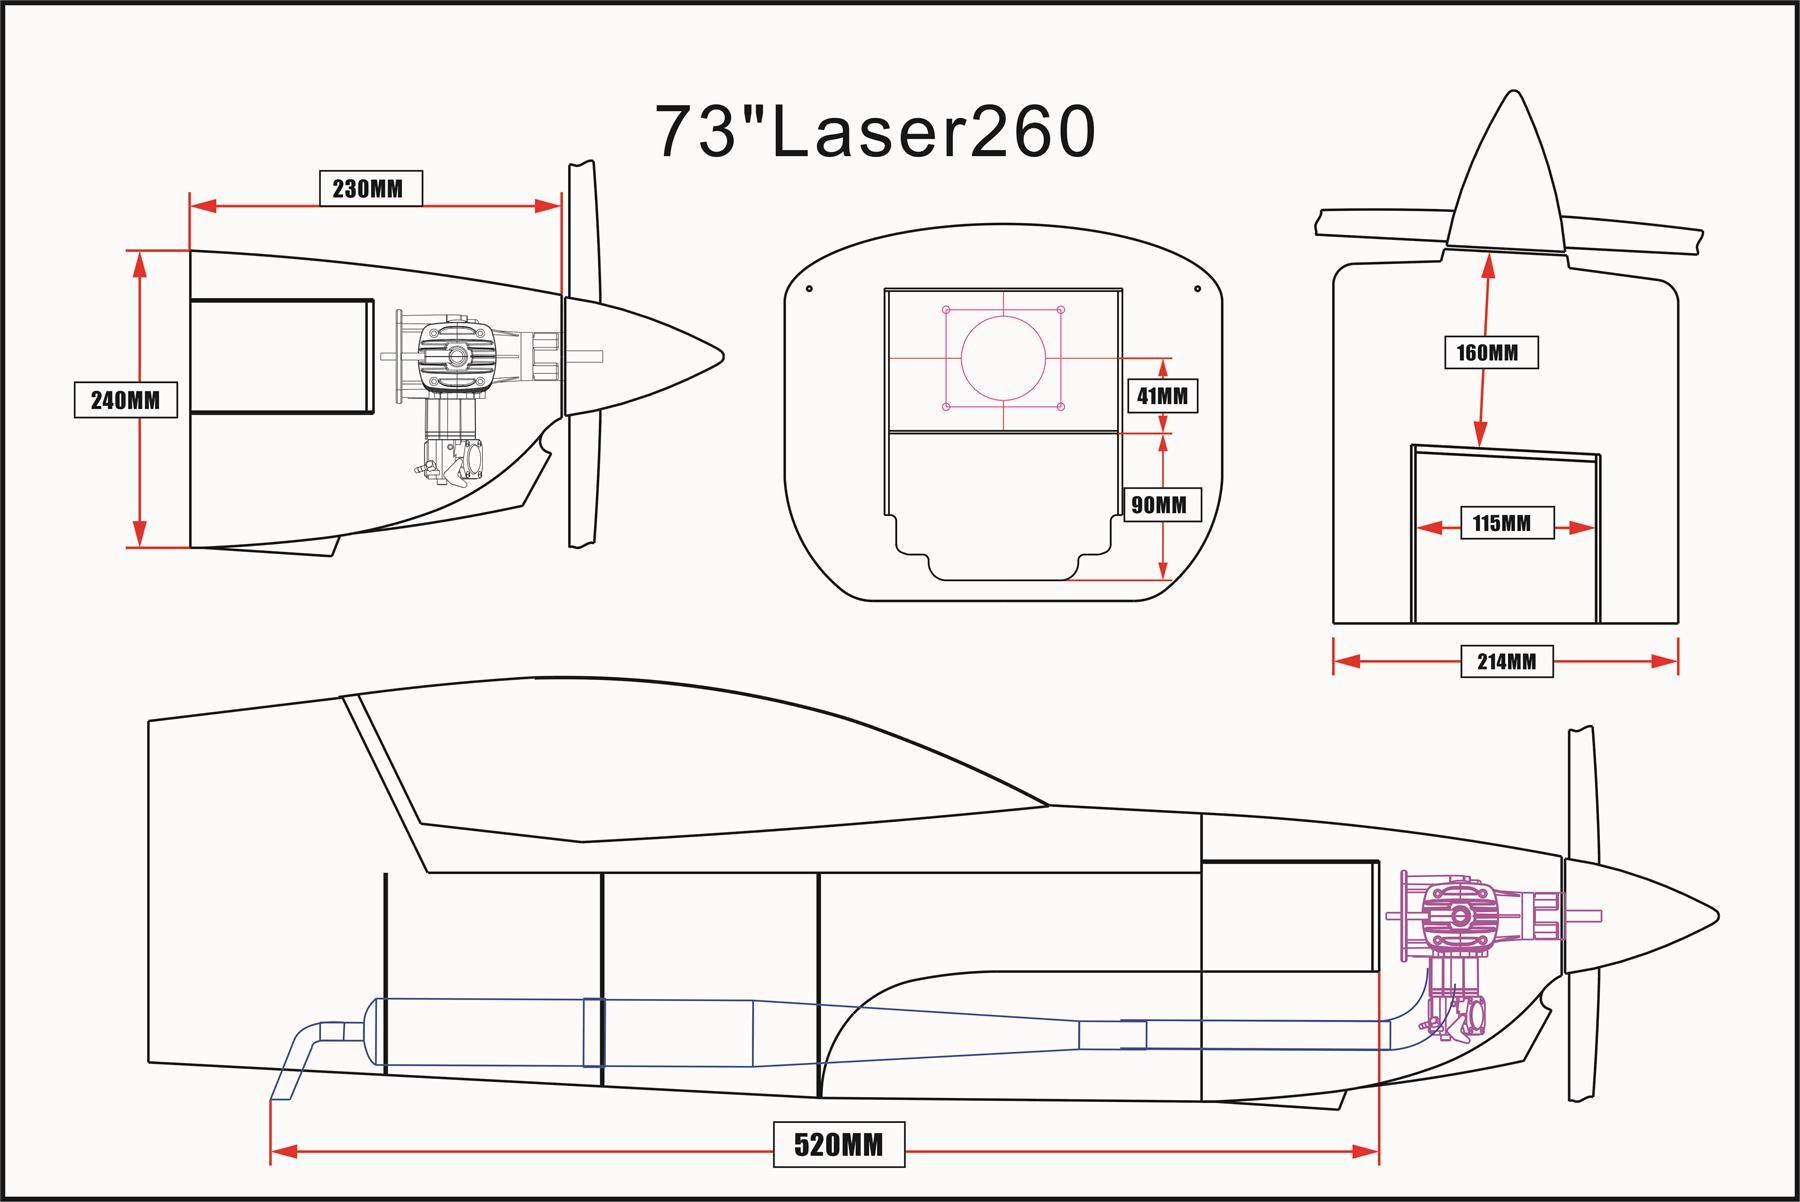 Laser 260 - 73 - V3 - blue/green/white